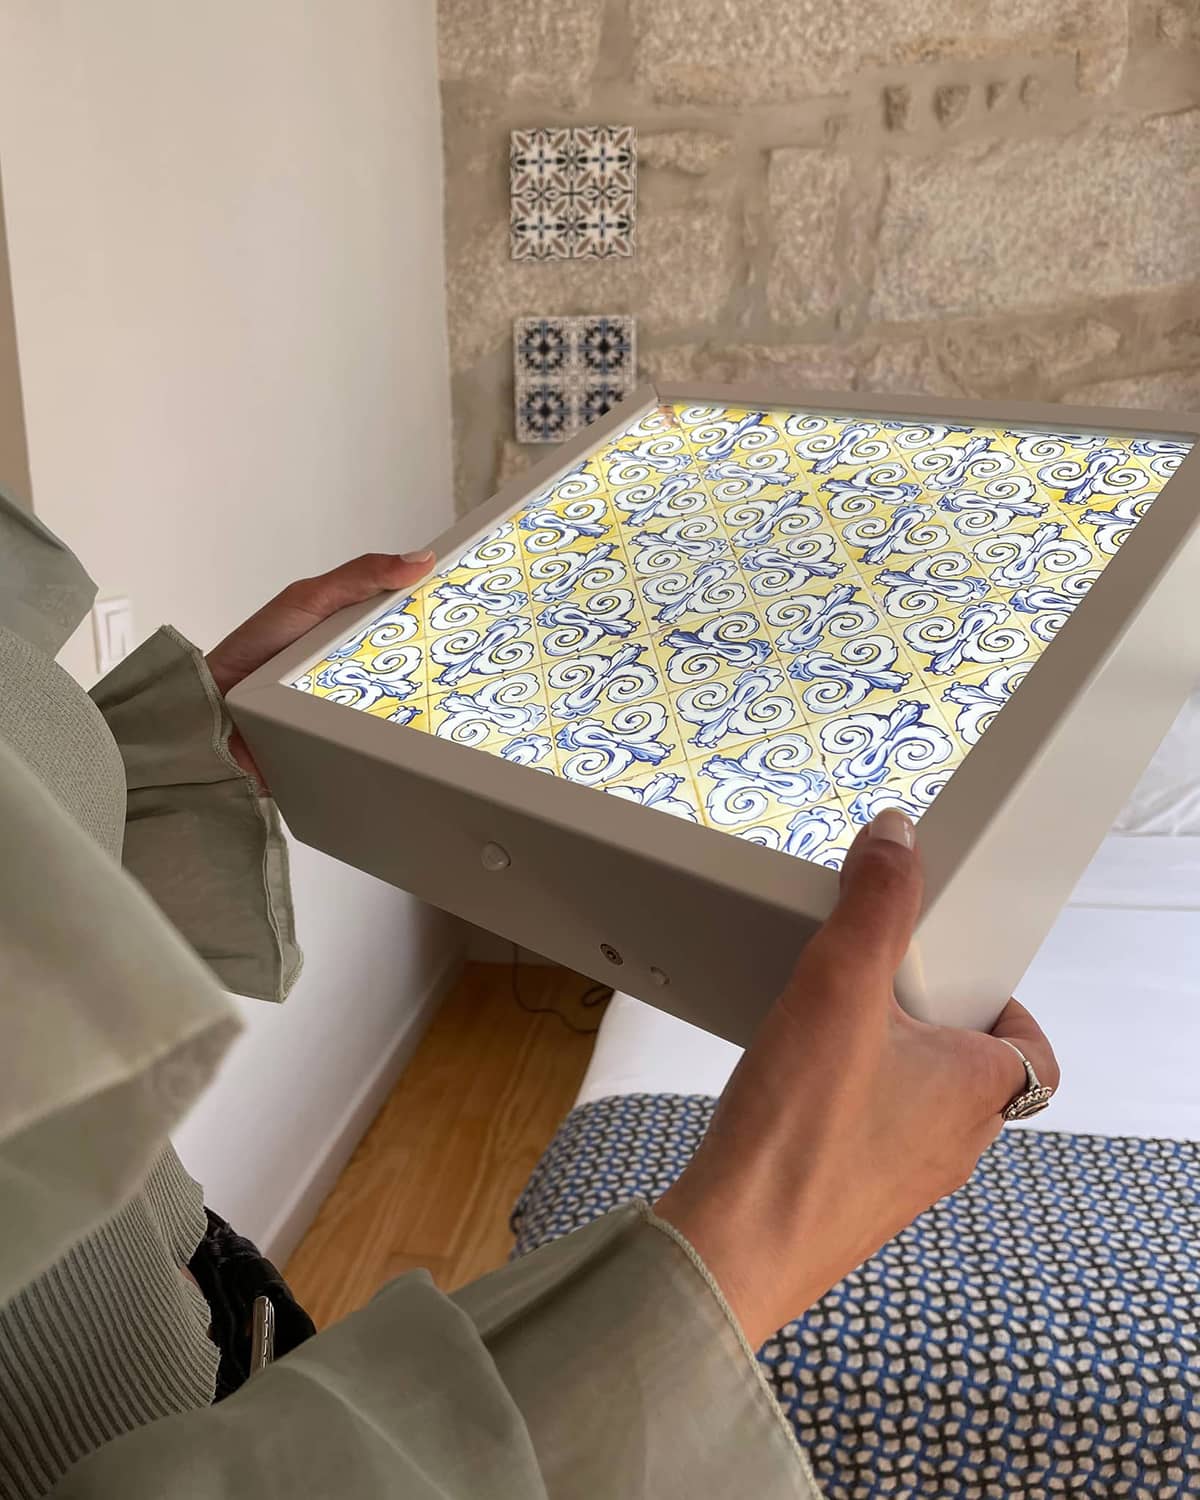 Moldura luminosa personalizada pela cliente com o fotografia de um padrão de azulejo. Decoração do quarto.